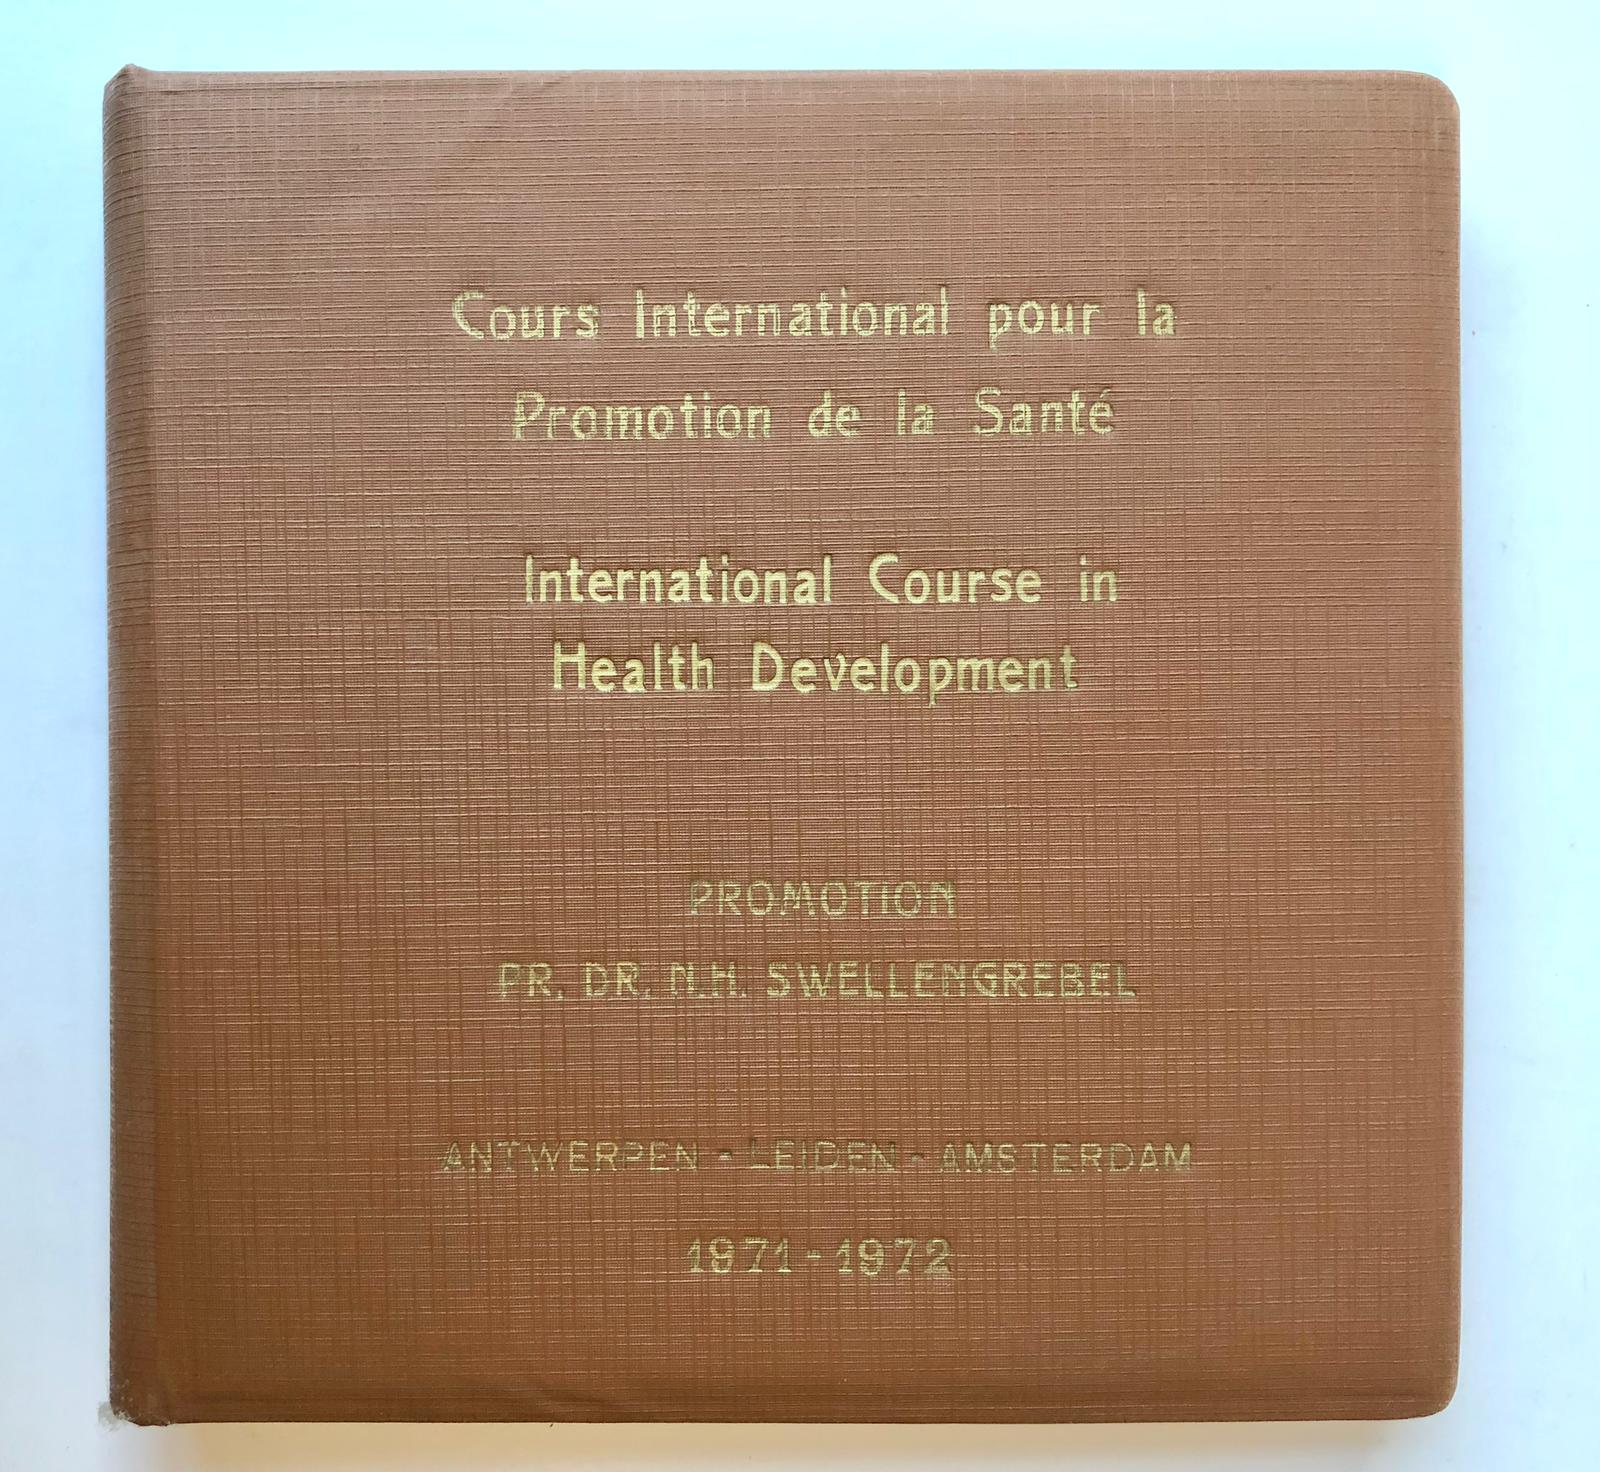  - [Photo album 1972] Fotoalbum International Course in Health Development 1971-72 Promotion dr. N.H. Swellengrebel, 40 fotos van de deelnemers en docenten van deze cursus.